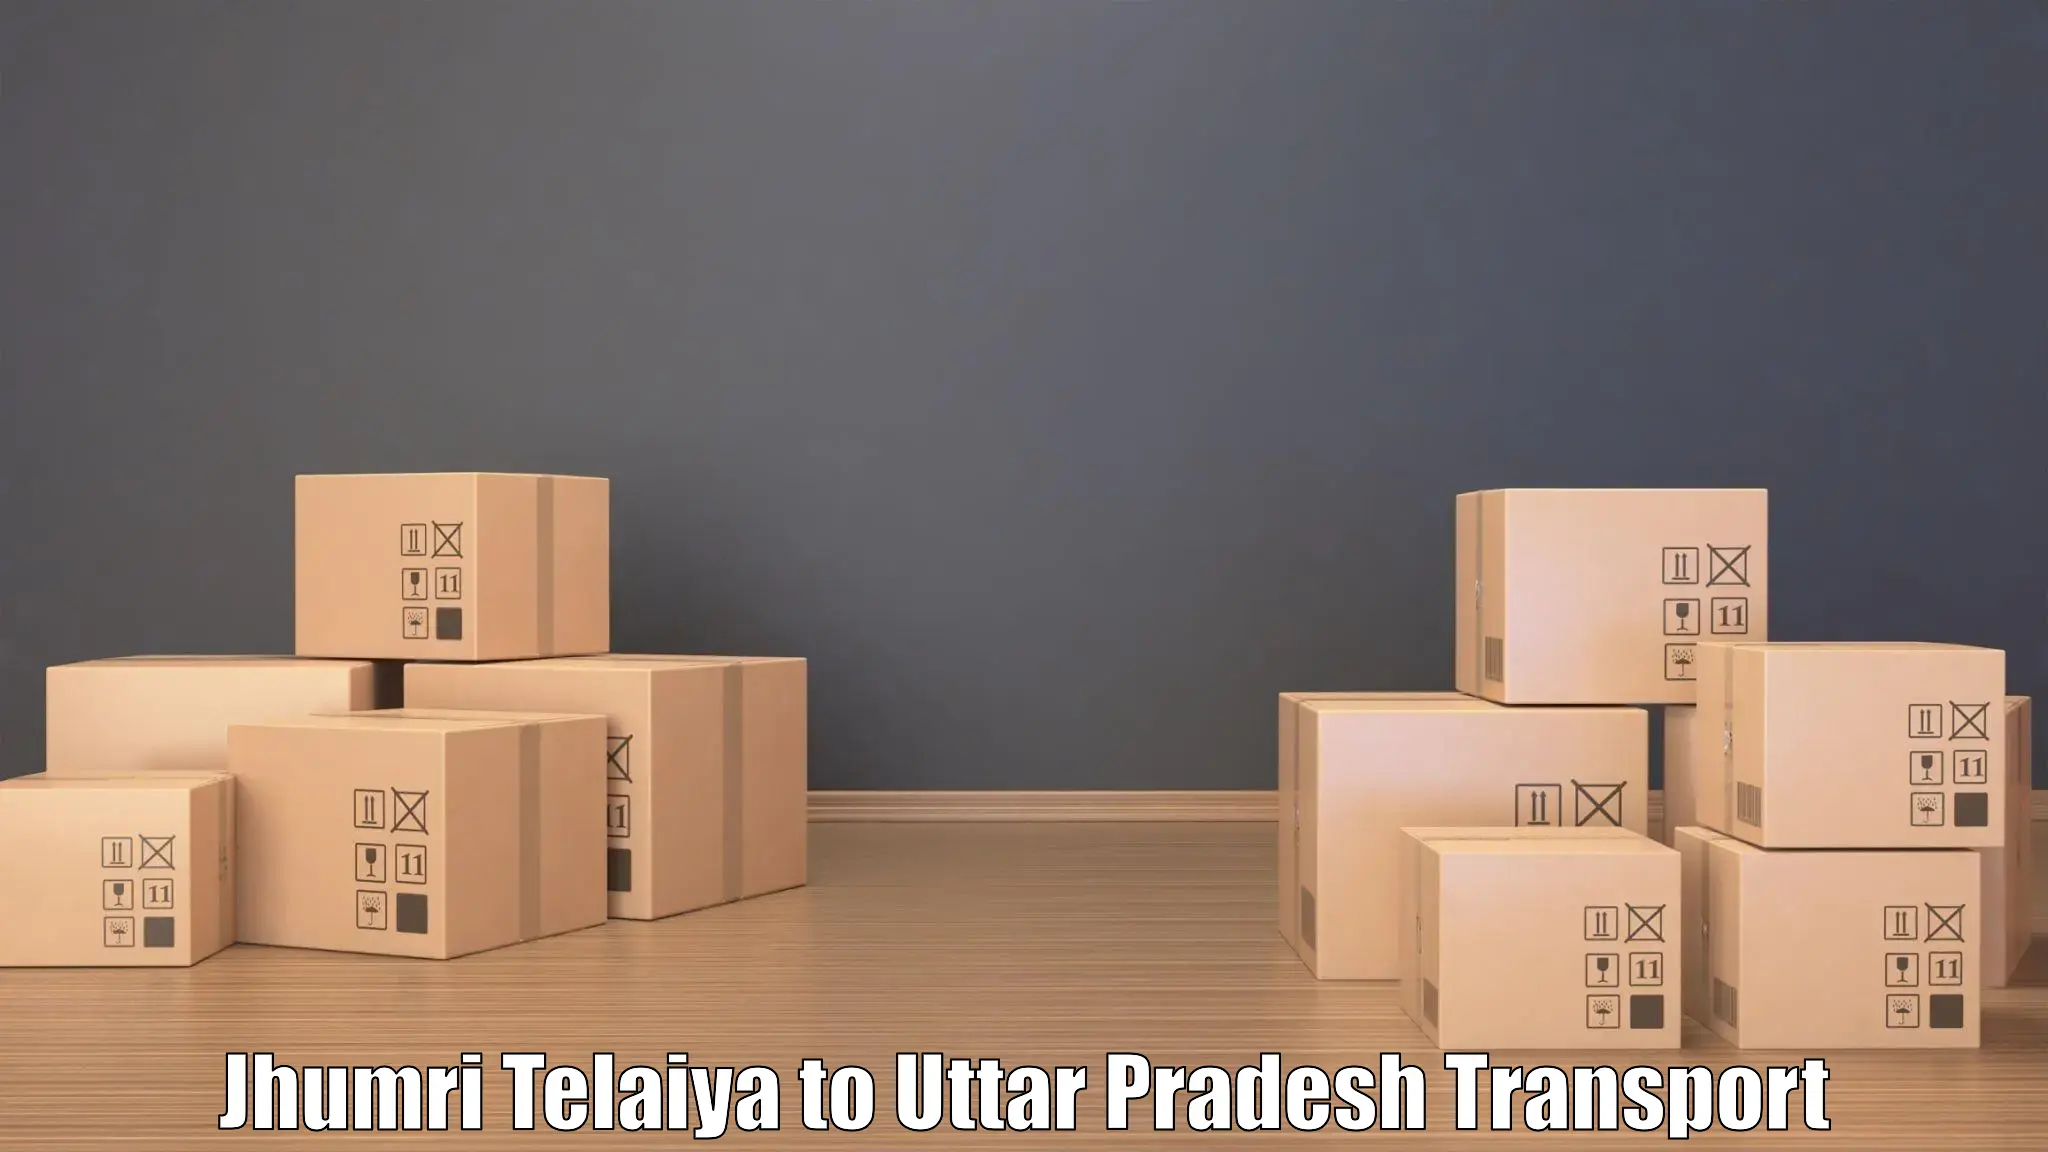 Furniture transport service Jhumri Telaiya to Kasganj